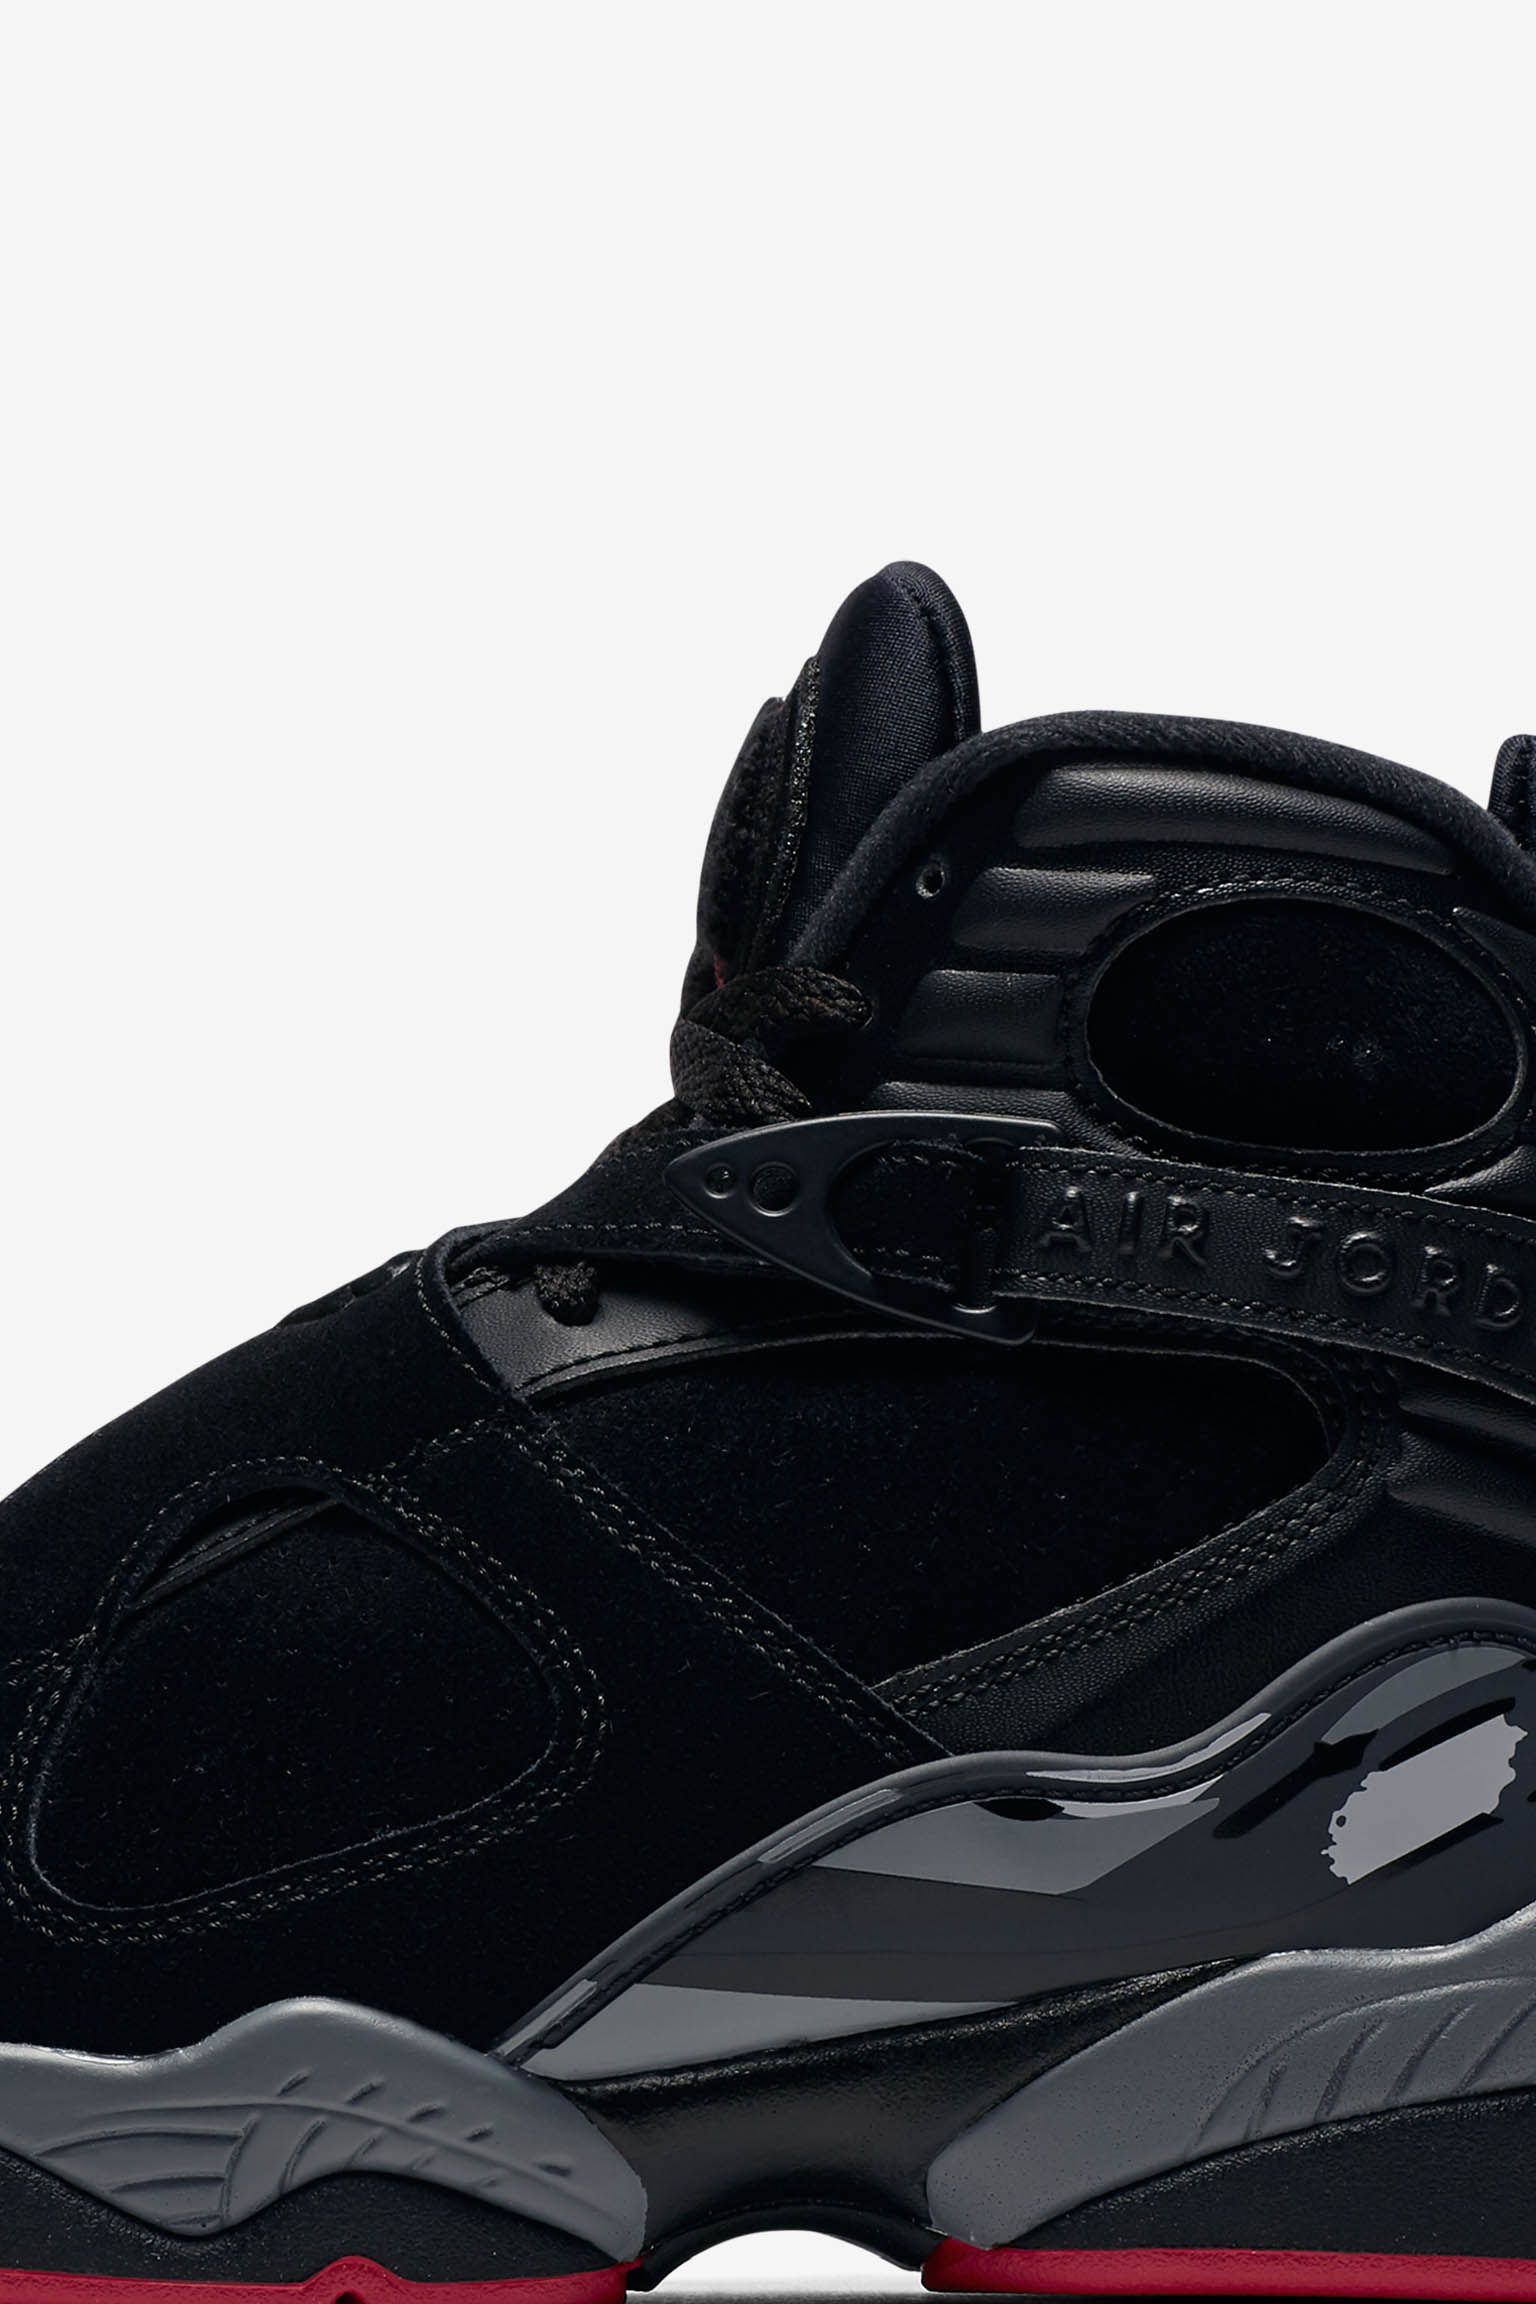 عطر روعة المسك Air Jordan 8 Retro 'Black & Gym Red' Release Date. Nike SNKRS عطر روعة المسك